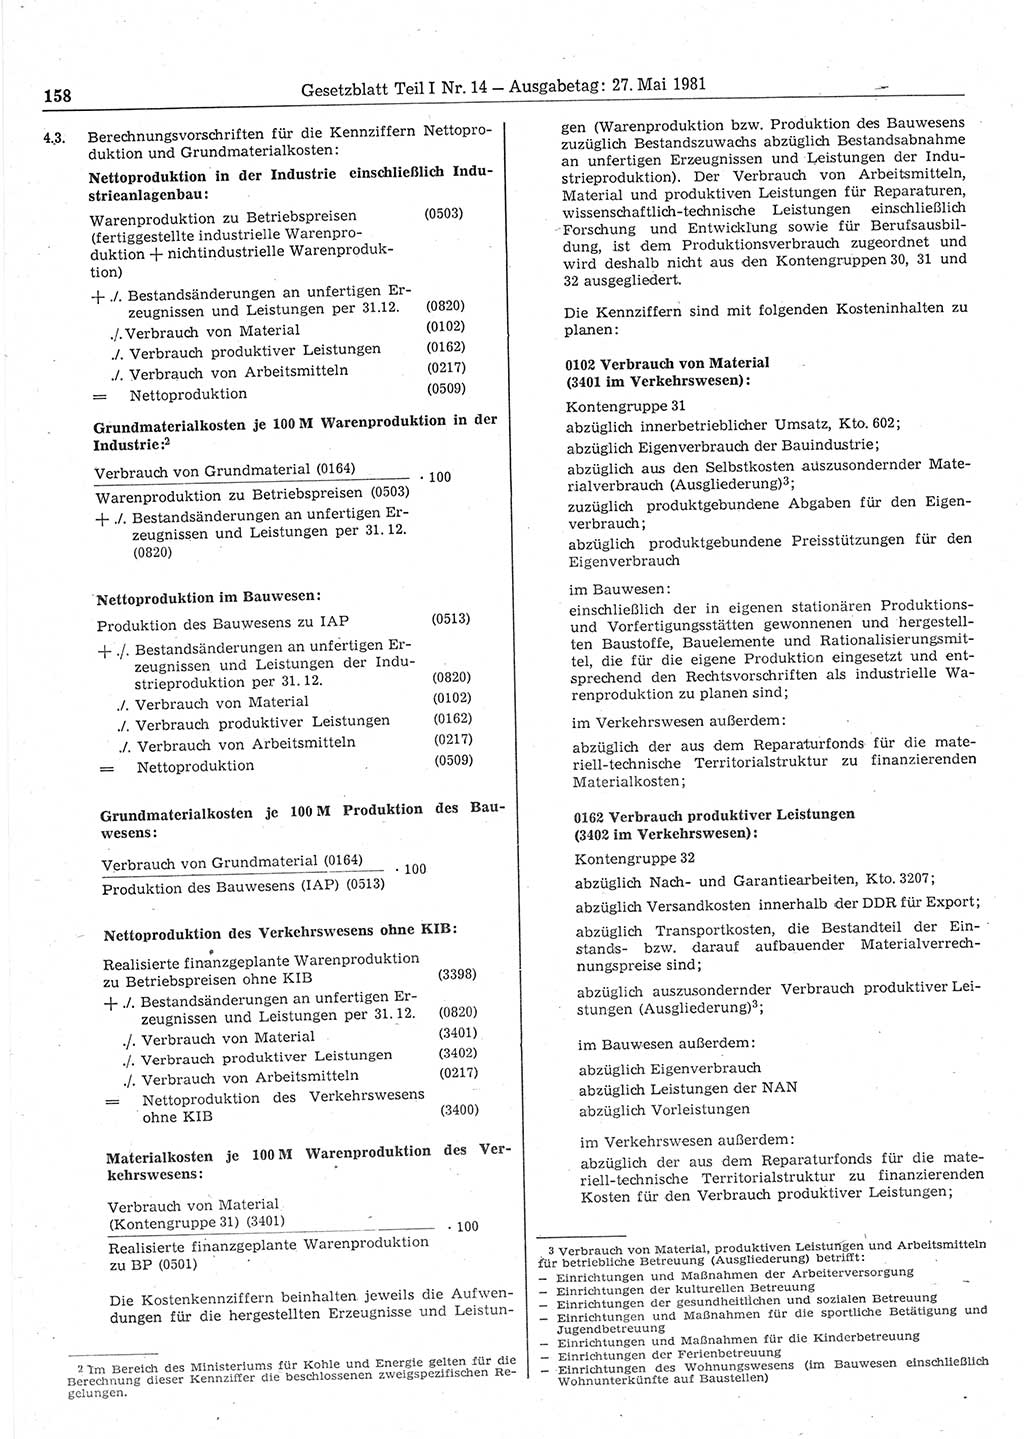 Gesetzblatt (GBl.) der Deutschen Demokratischen Republik (DDR) Teil Ⅰ 1981, Seite 158 (GBl. DDR Ⅰ 1981, S. 158)